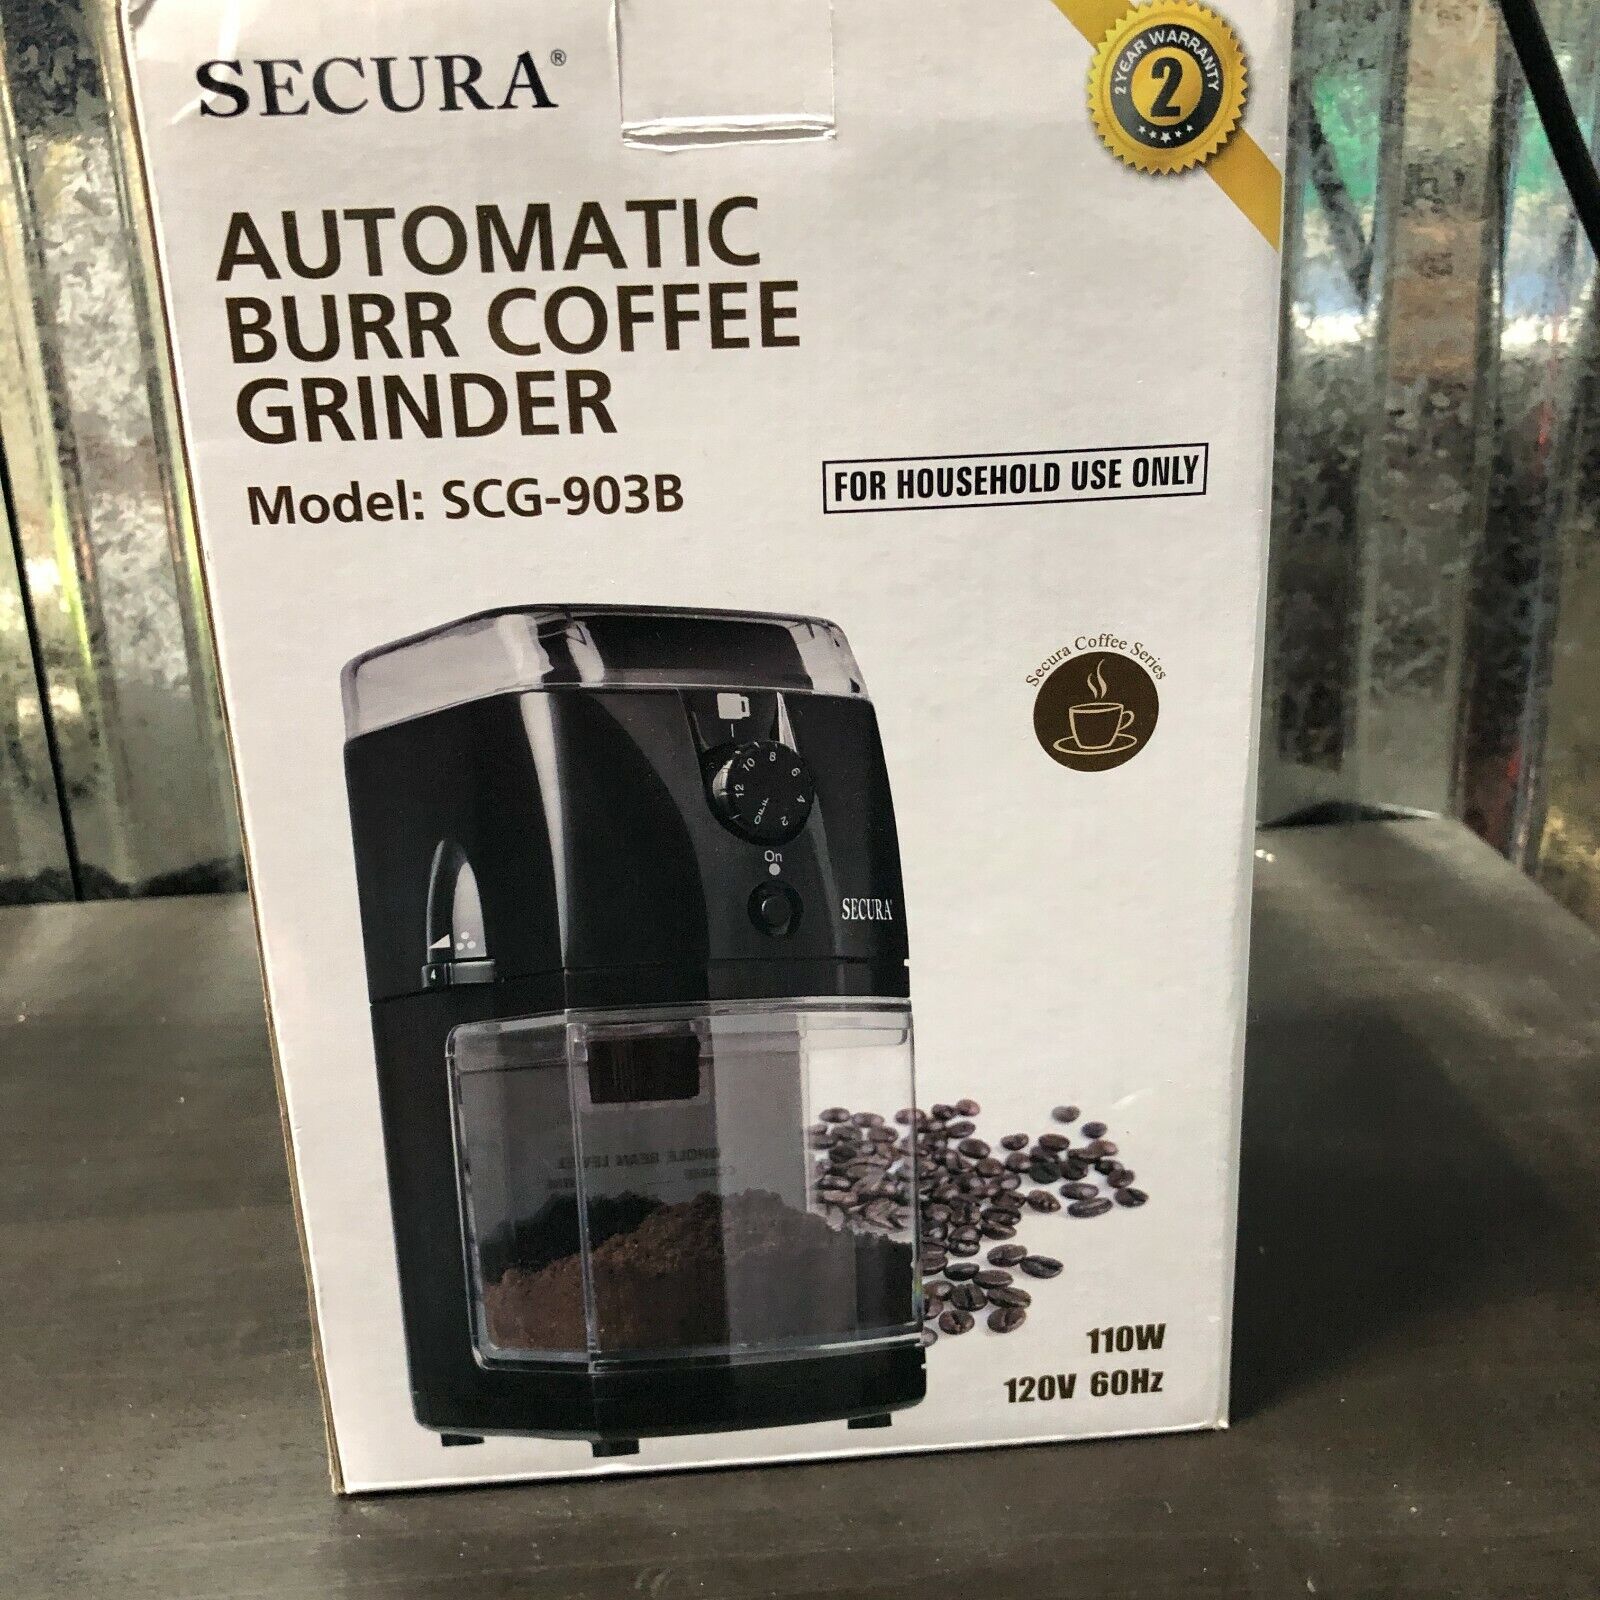 secura automatic burr coffee grinder model scg 903b